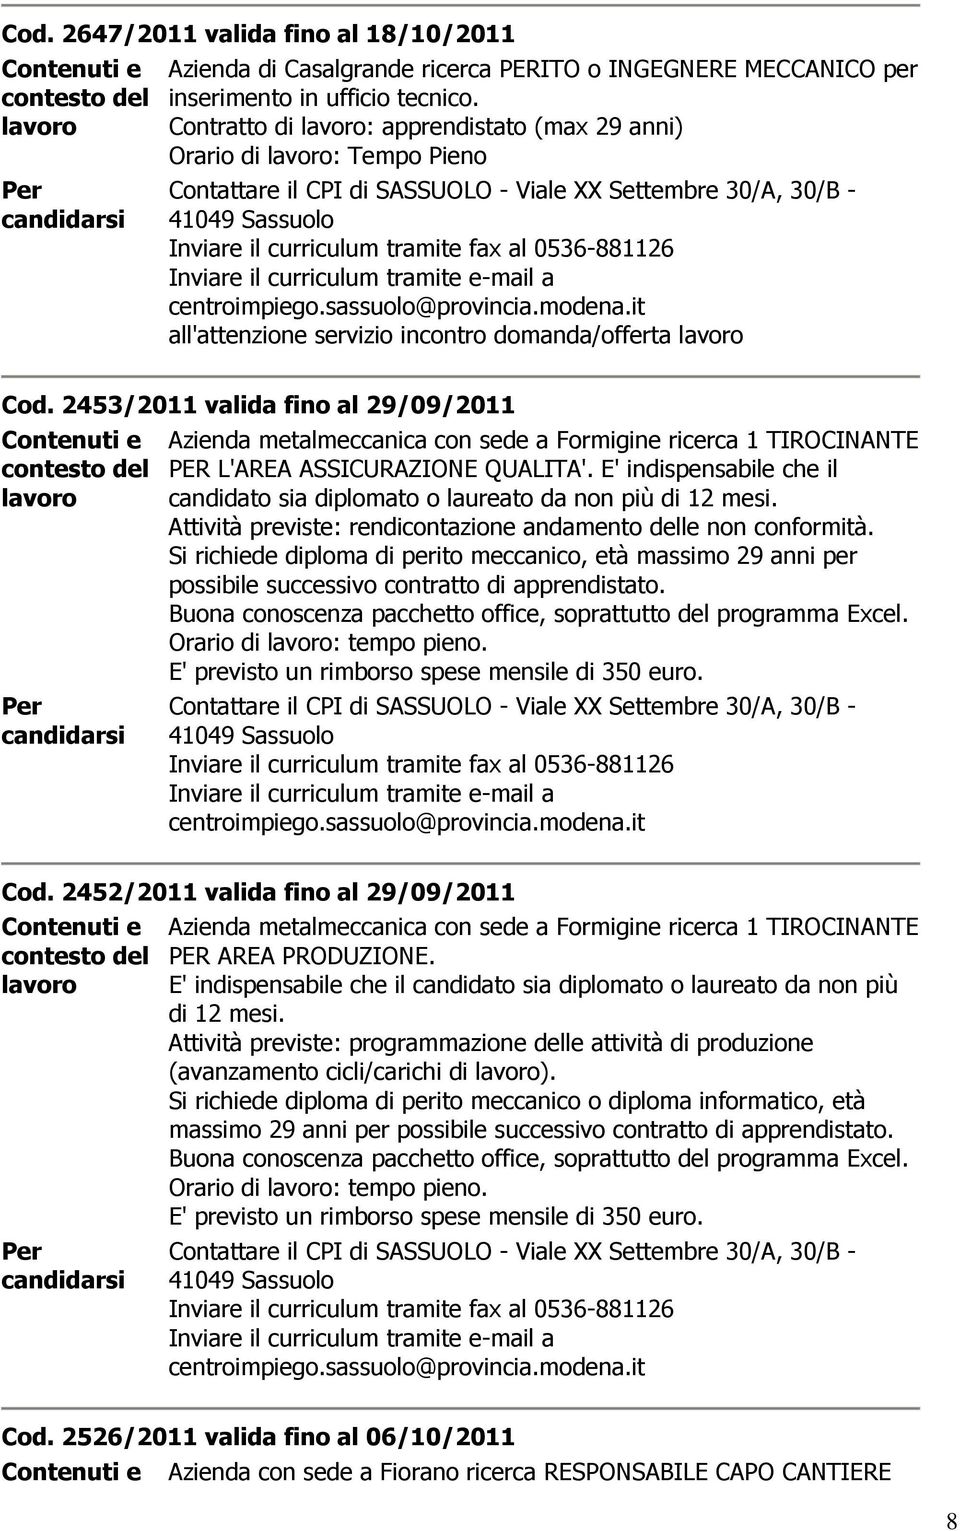 2453/2011 valida fino al 29/09/2011 Azienda metalmeccanica con sede a Formigine ricerca 1 TIROCINANTE PER L'AREA ASSICURAZIONE QUALITA'.